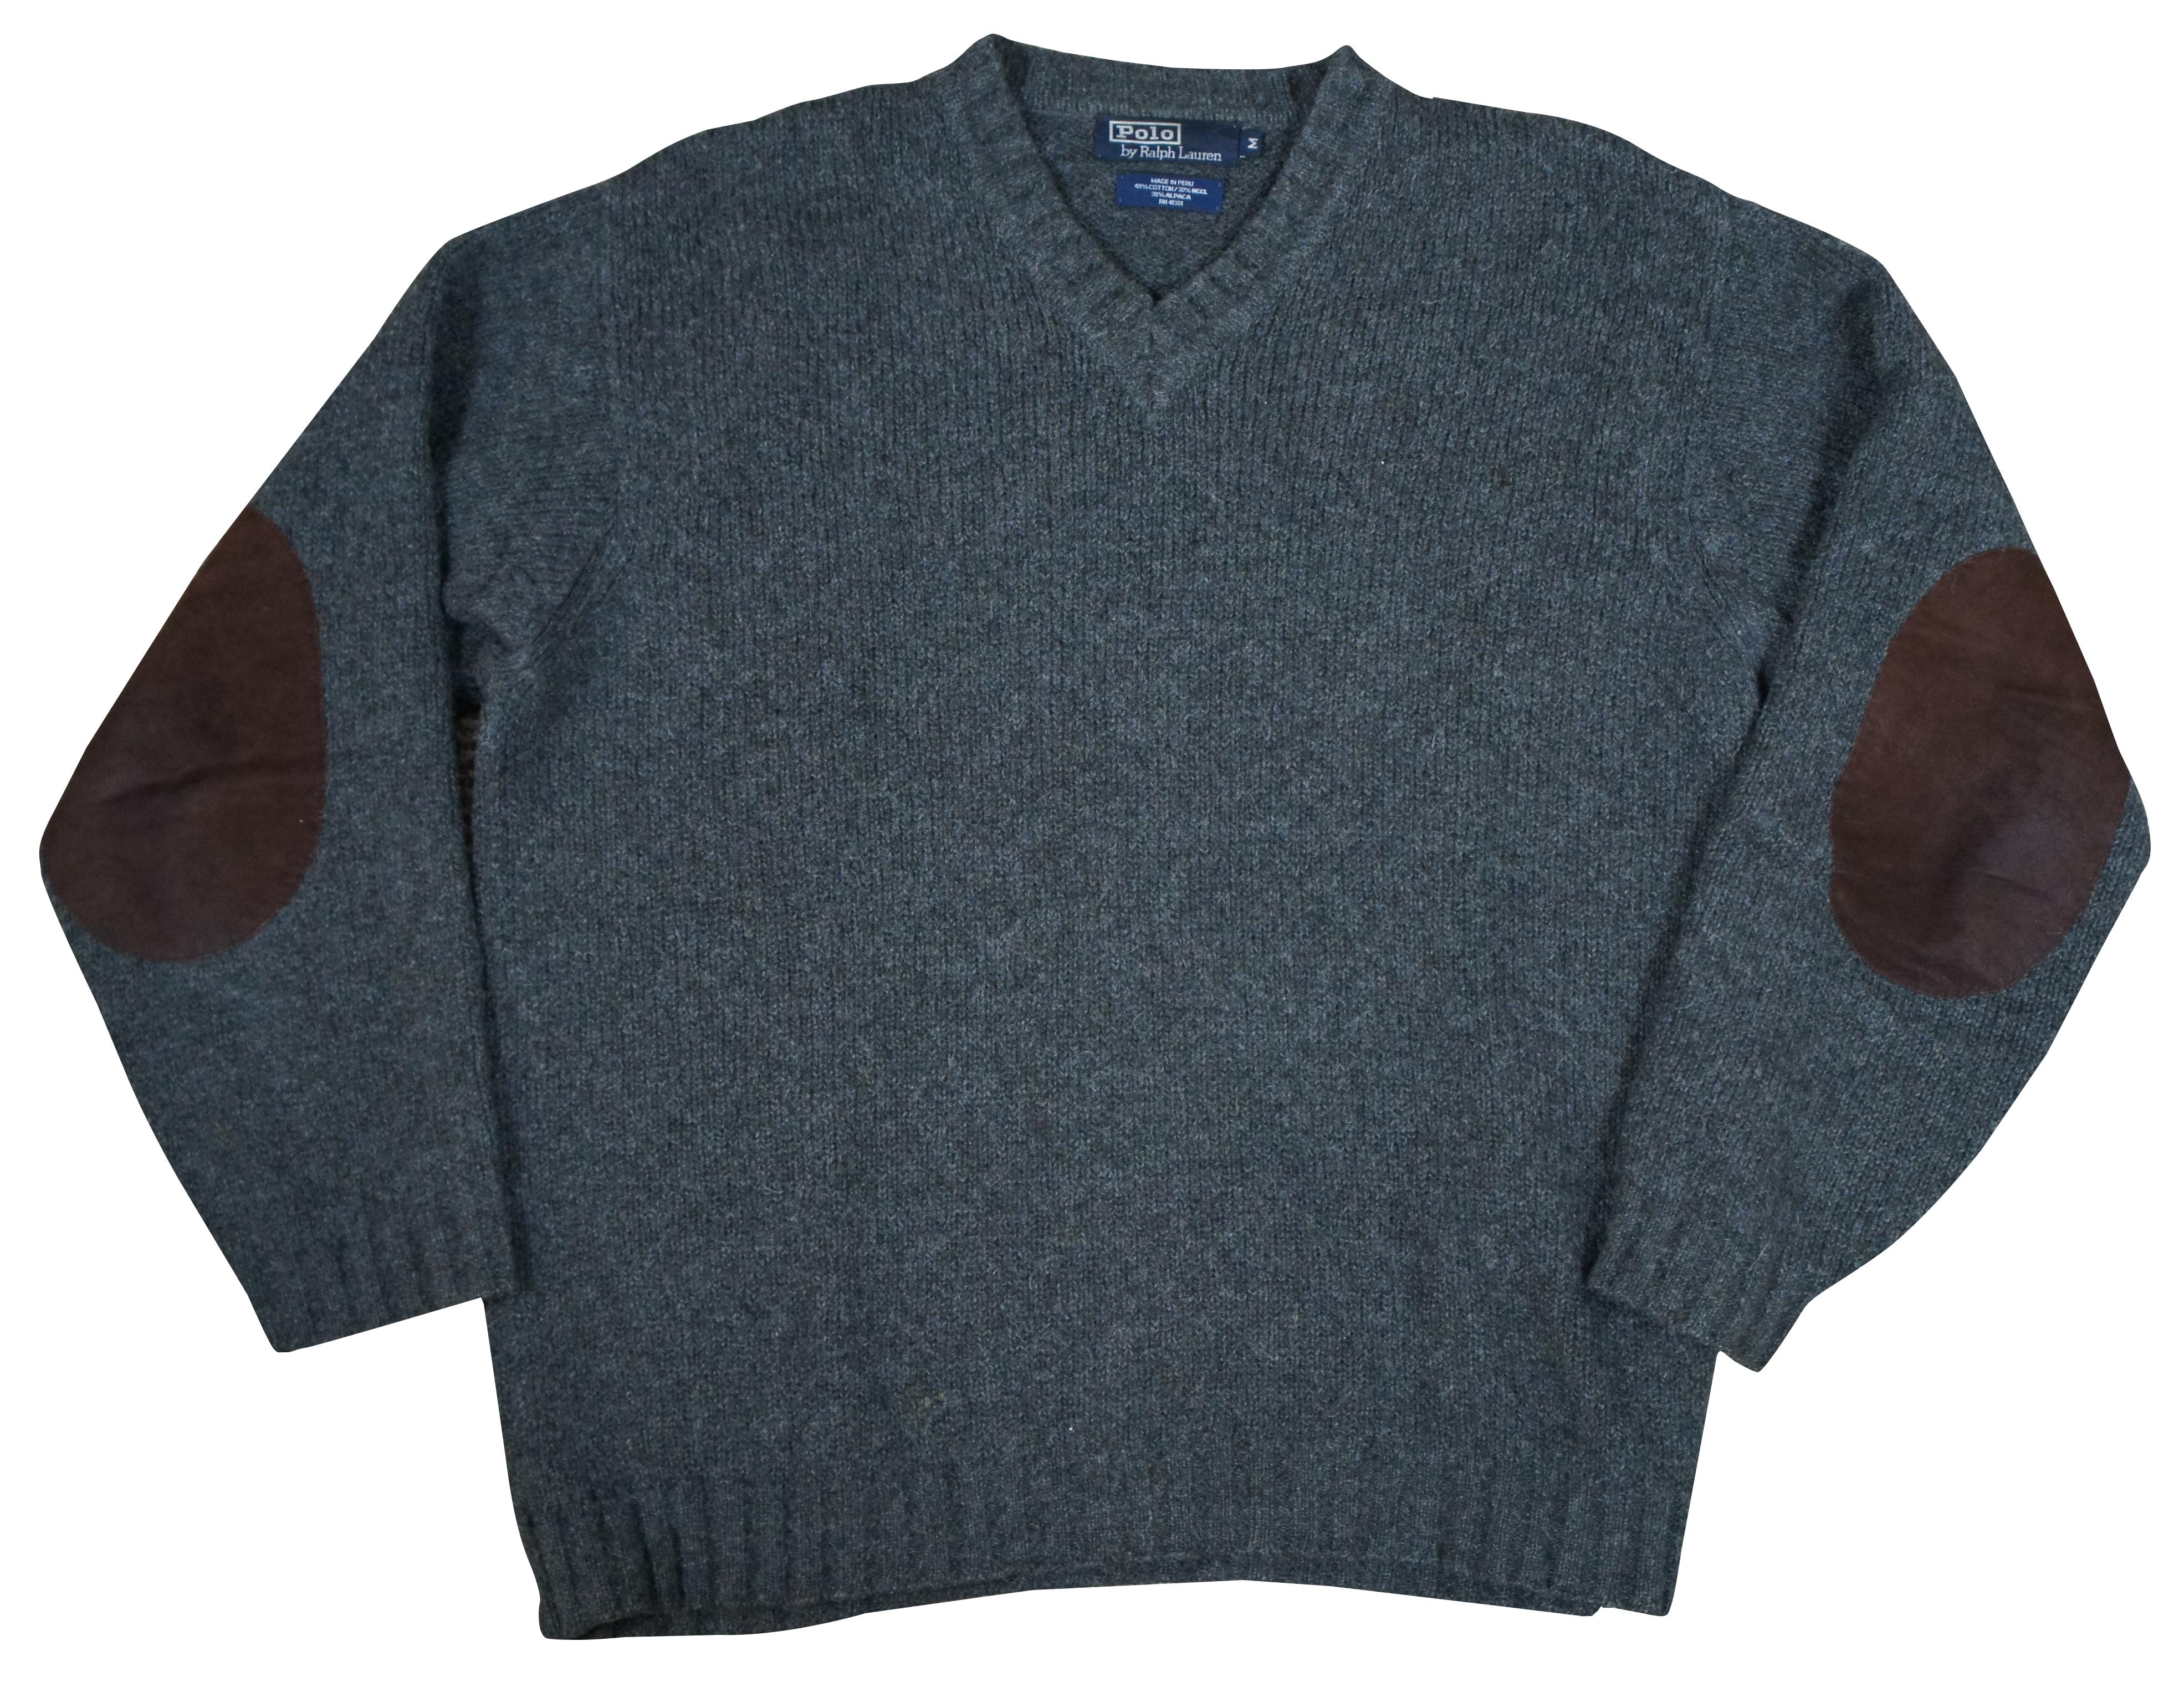 Polo Ralph Lauren Pullover mit langen Ärmeln aus grauem Baumwoll-/Woll-/Alpaka-Gemisch und braunen Lederaufnähern an den Ellbogen.

Größe M / Schultern - 21